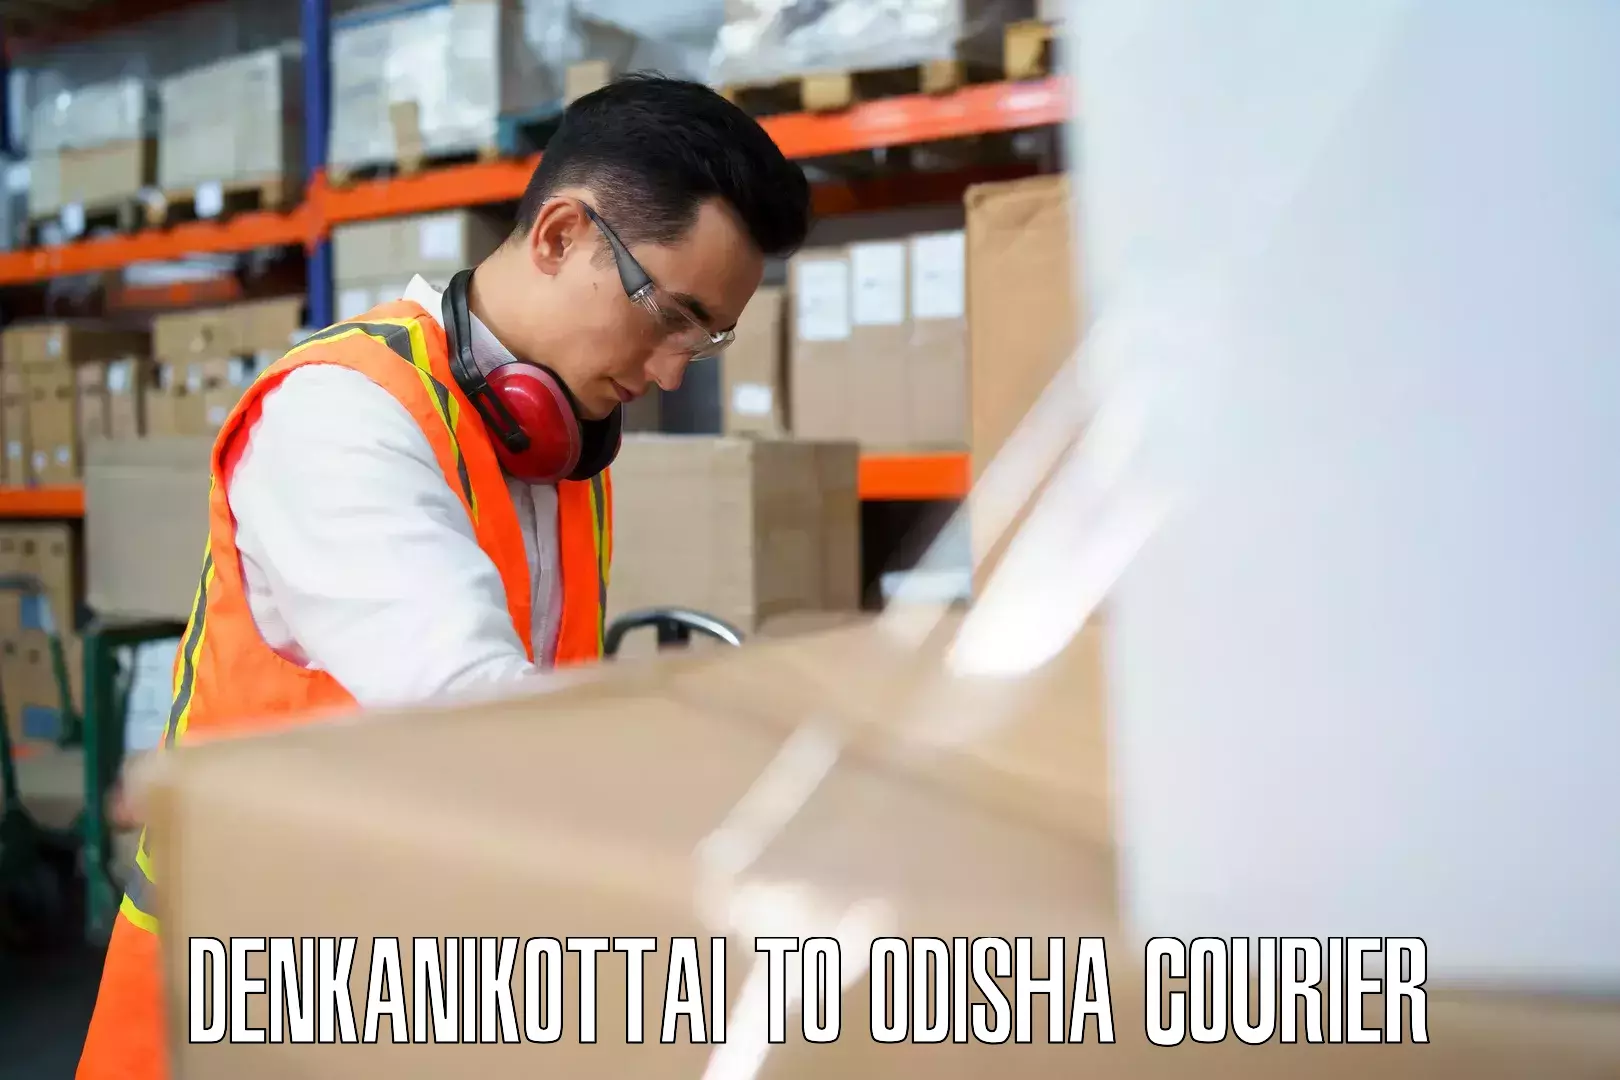 Luggage delivery rates Denkanikottai to Odisha